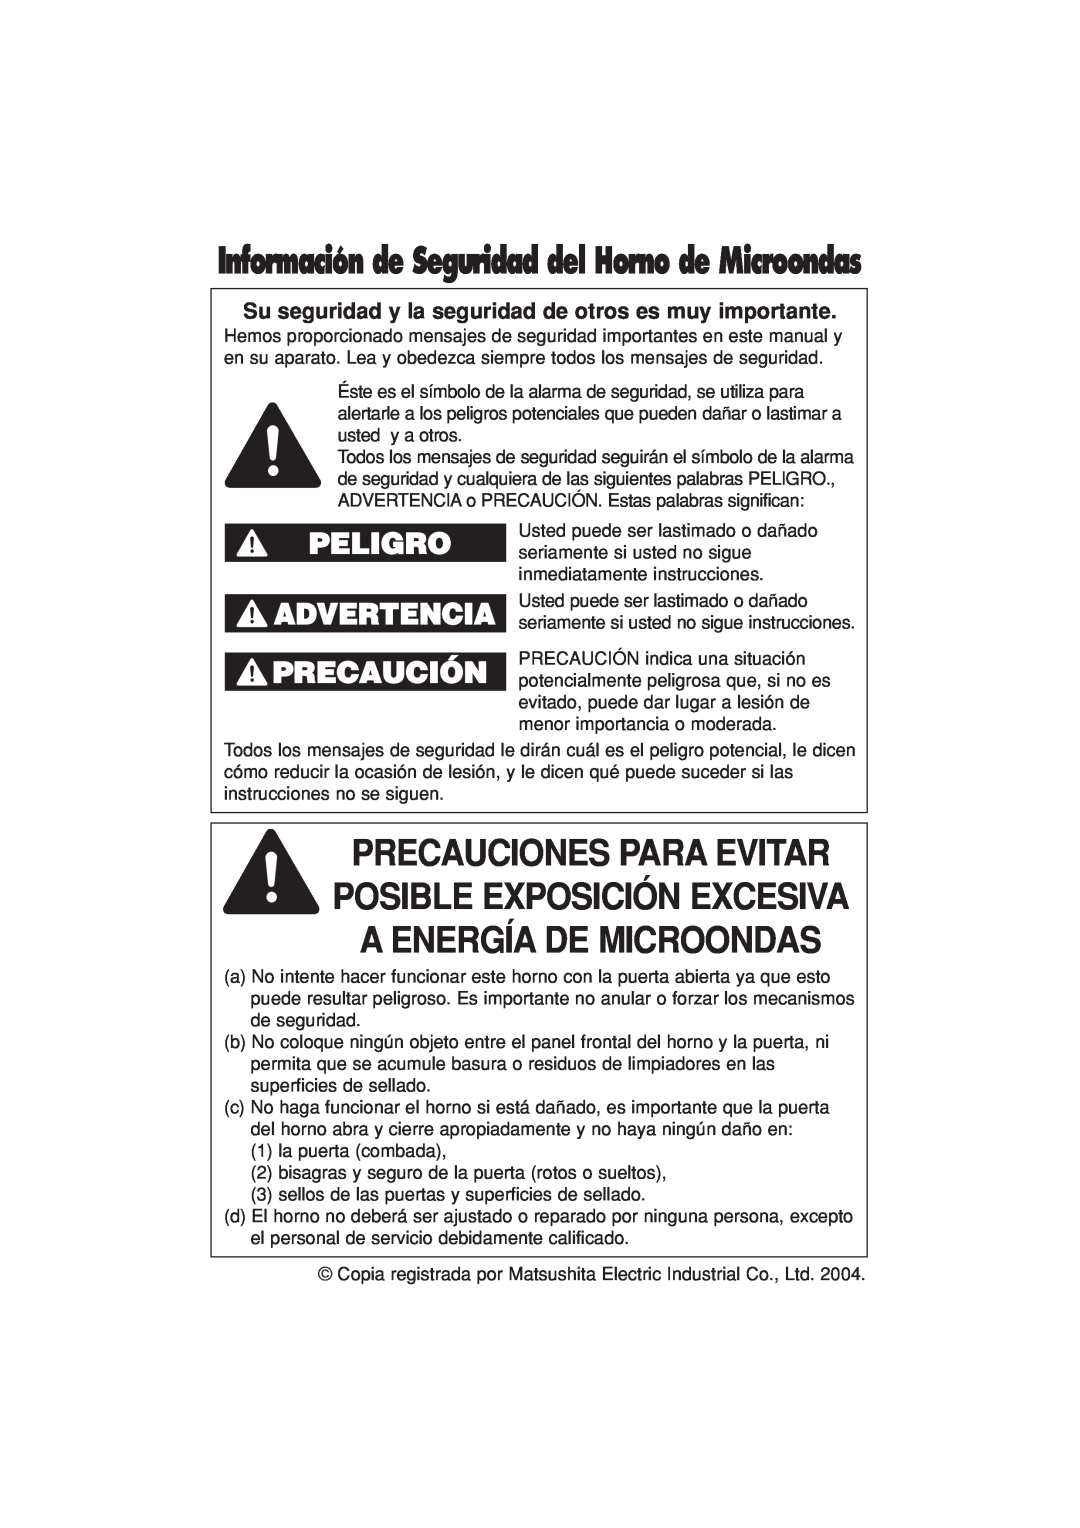 Panasonic NN-T694 operating instructions Peligro, Advertencia Precaución, Información de Seguridad del Horno de Microondas 